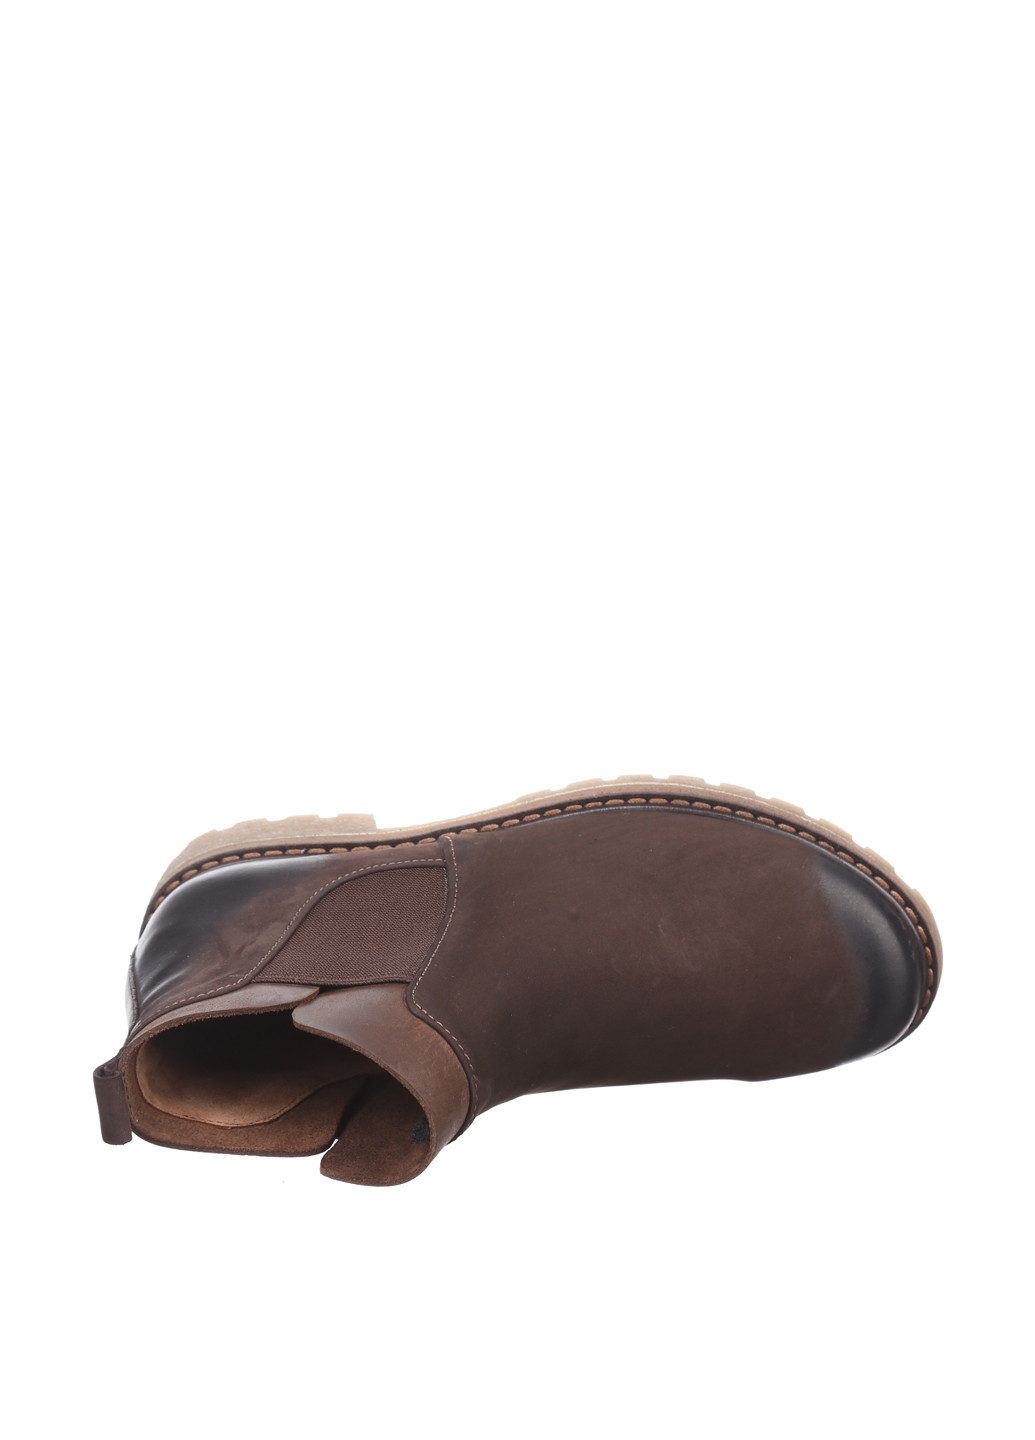 Осенние ботинки челси Maria Tucci без декора из искусственной кожи